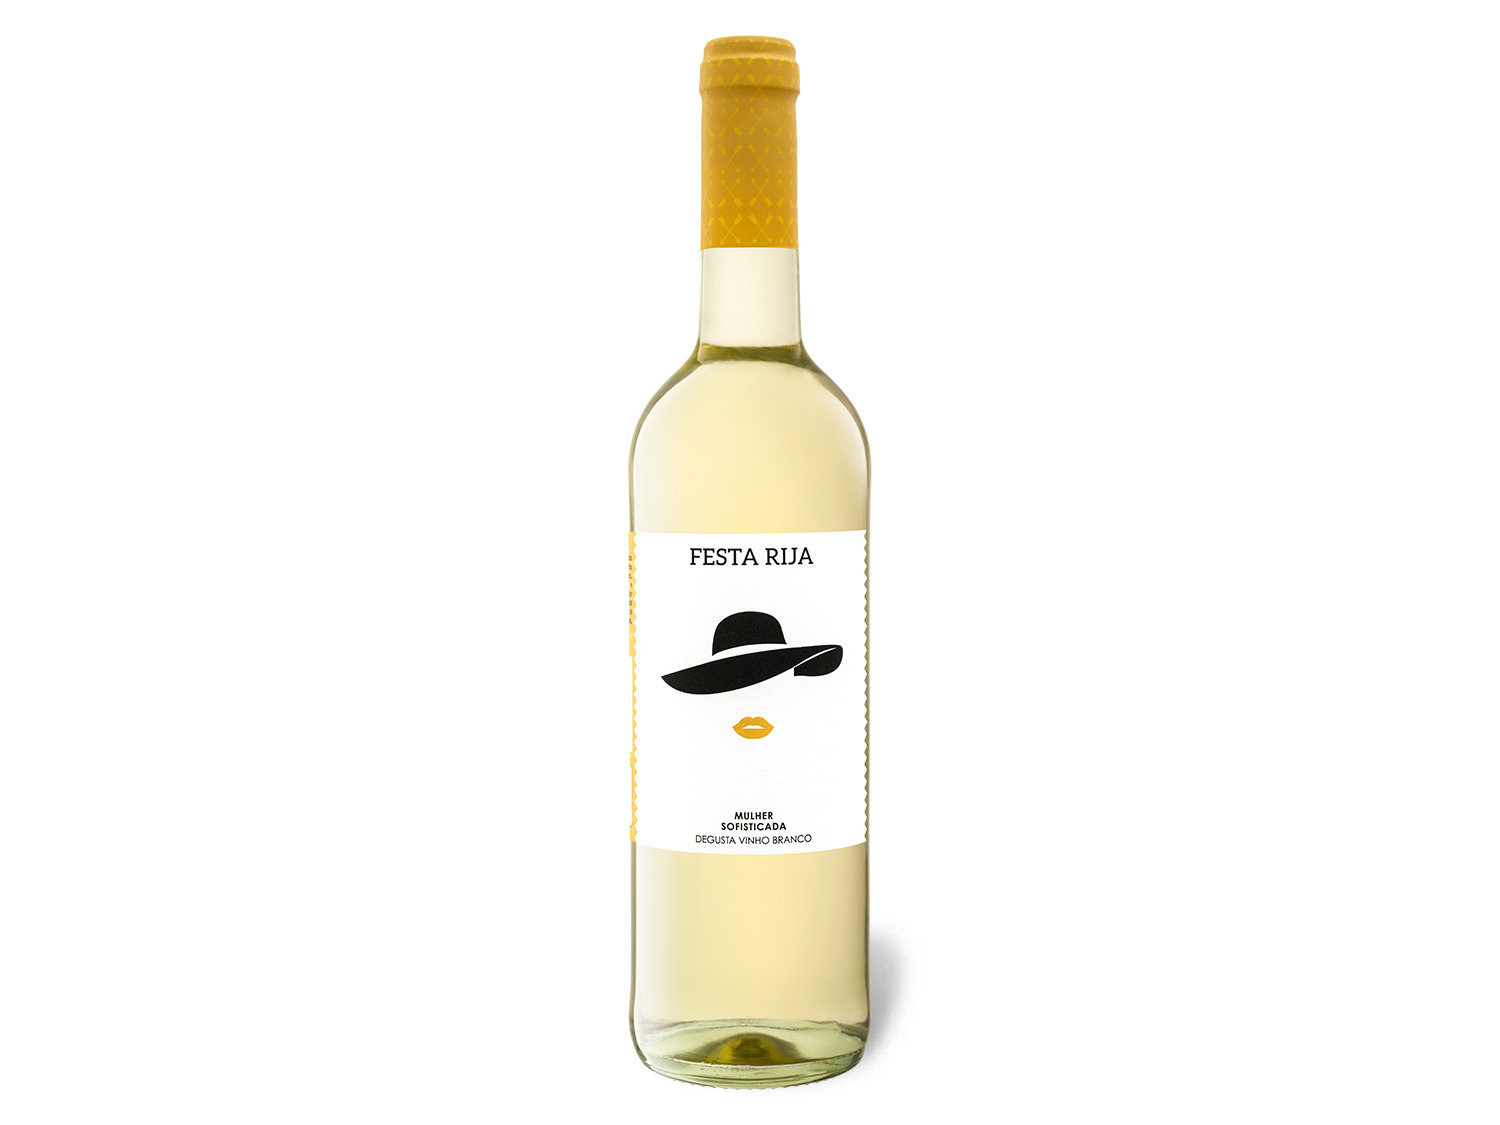 Festa Rija Vinho Regional Tejo trocken Weißwein 2020